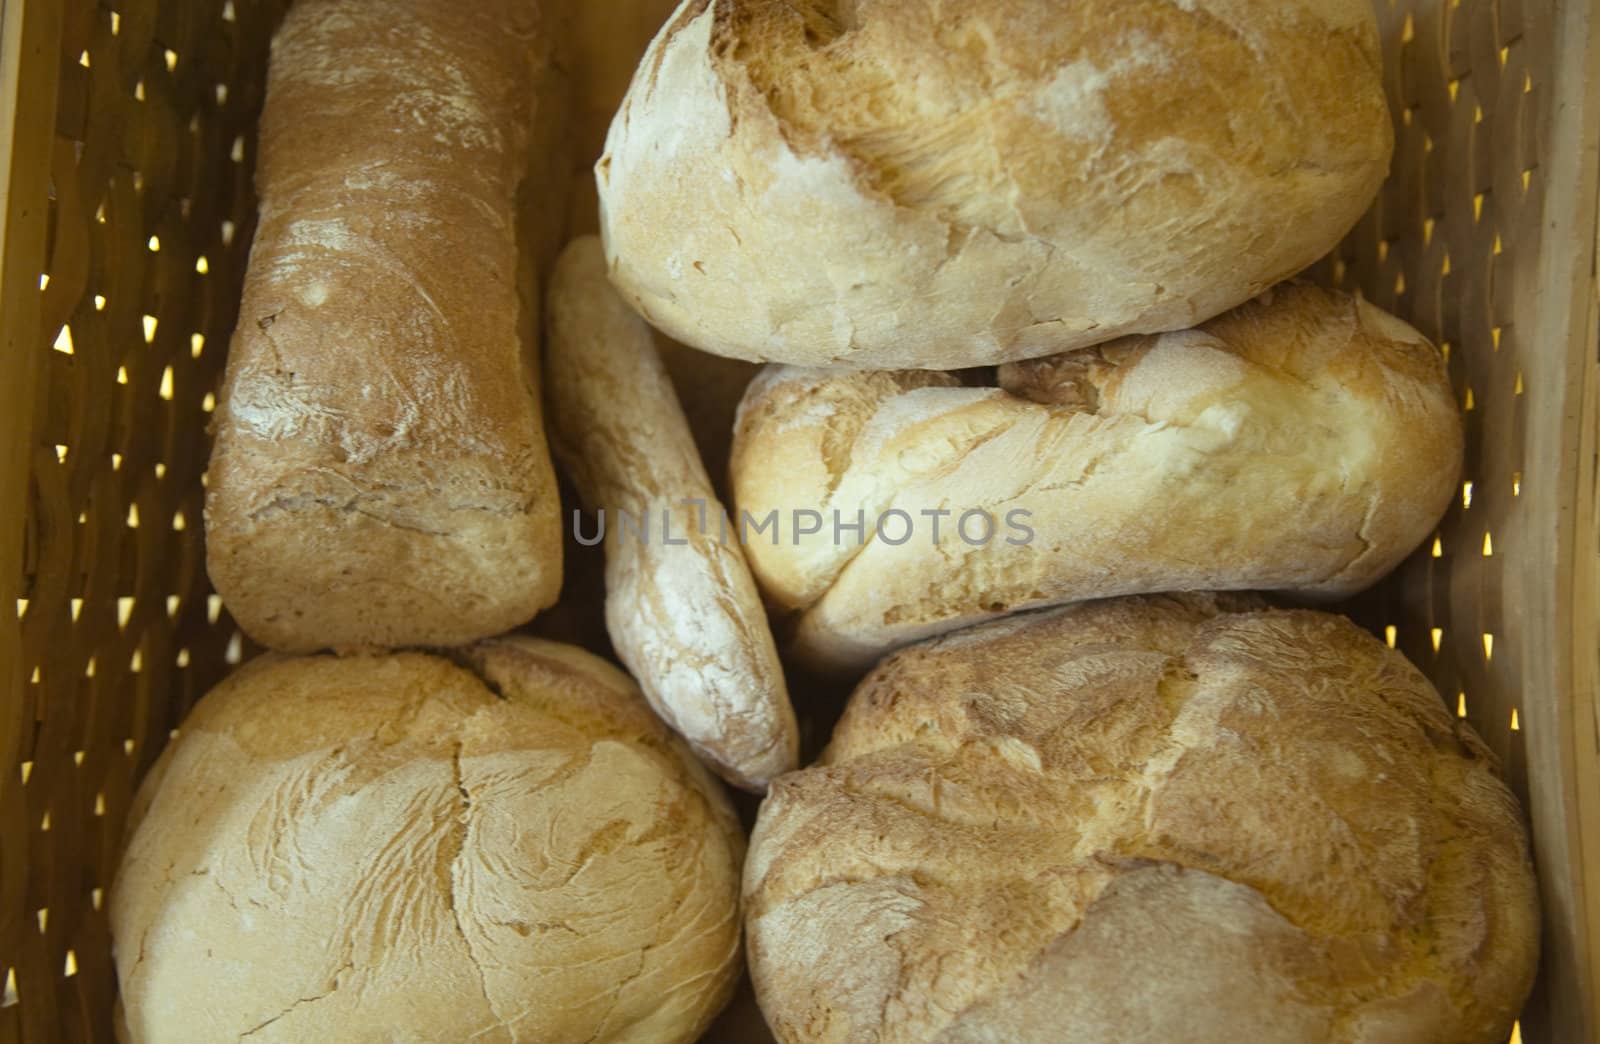 Six loafs of bread inside a basket.